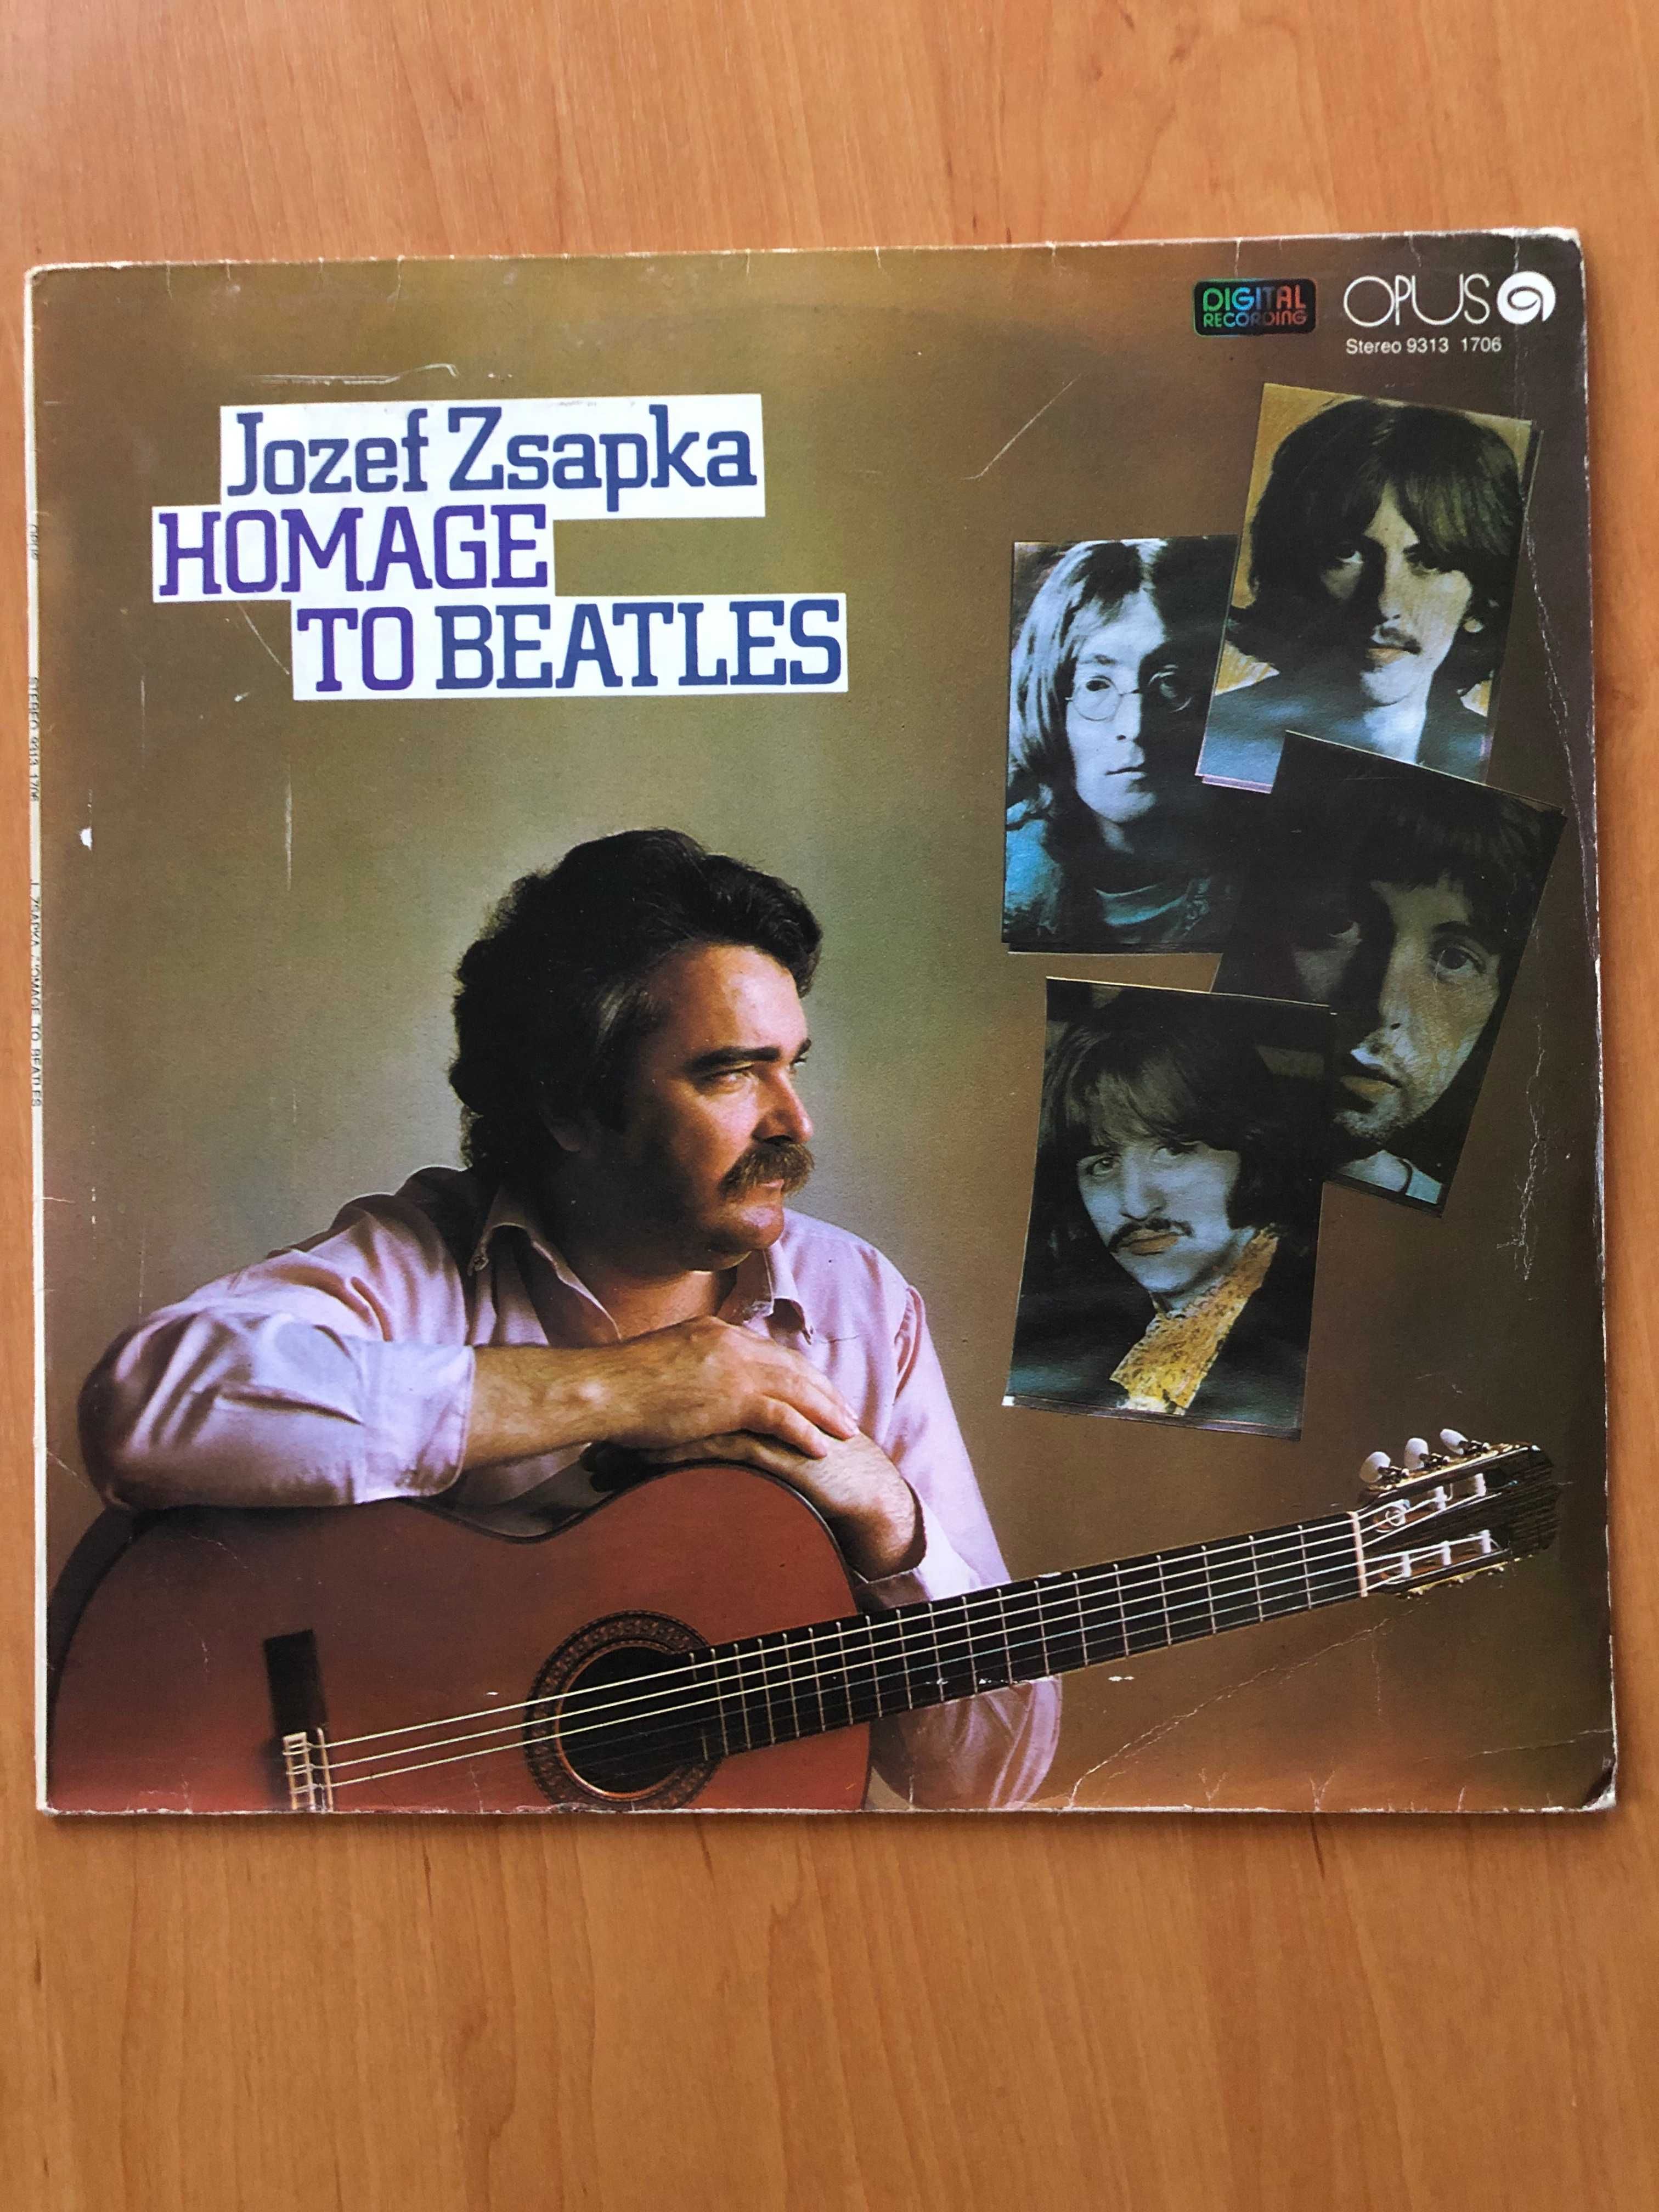 Płyta winylowa - Józef Zsapka Homage To Beatles